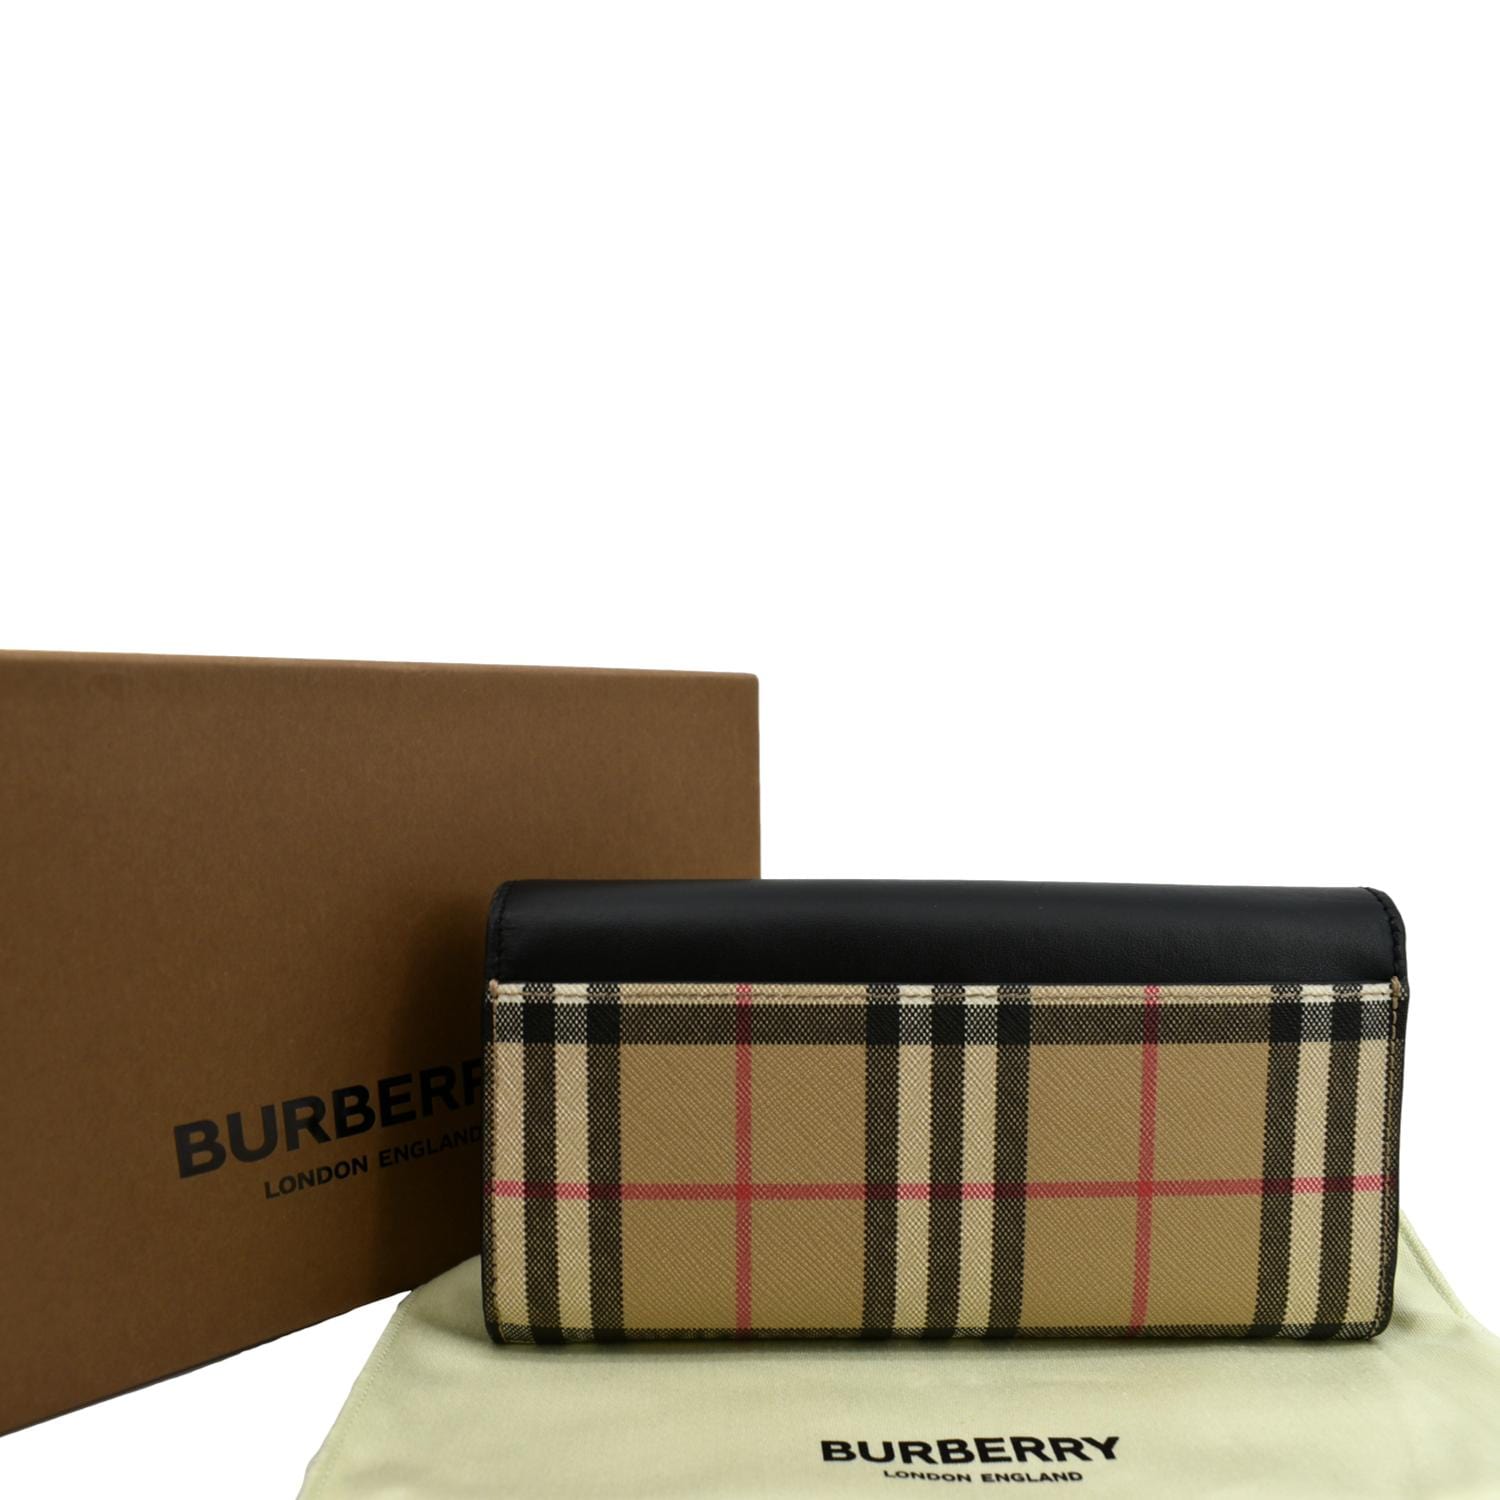 BURBERRY  Burberry wallet, Burberry, Burberry vintage